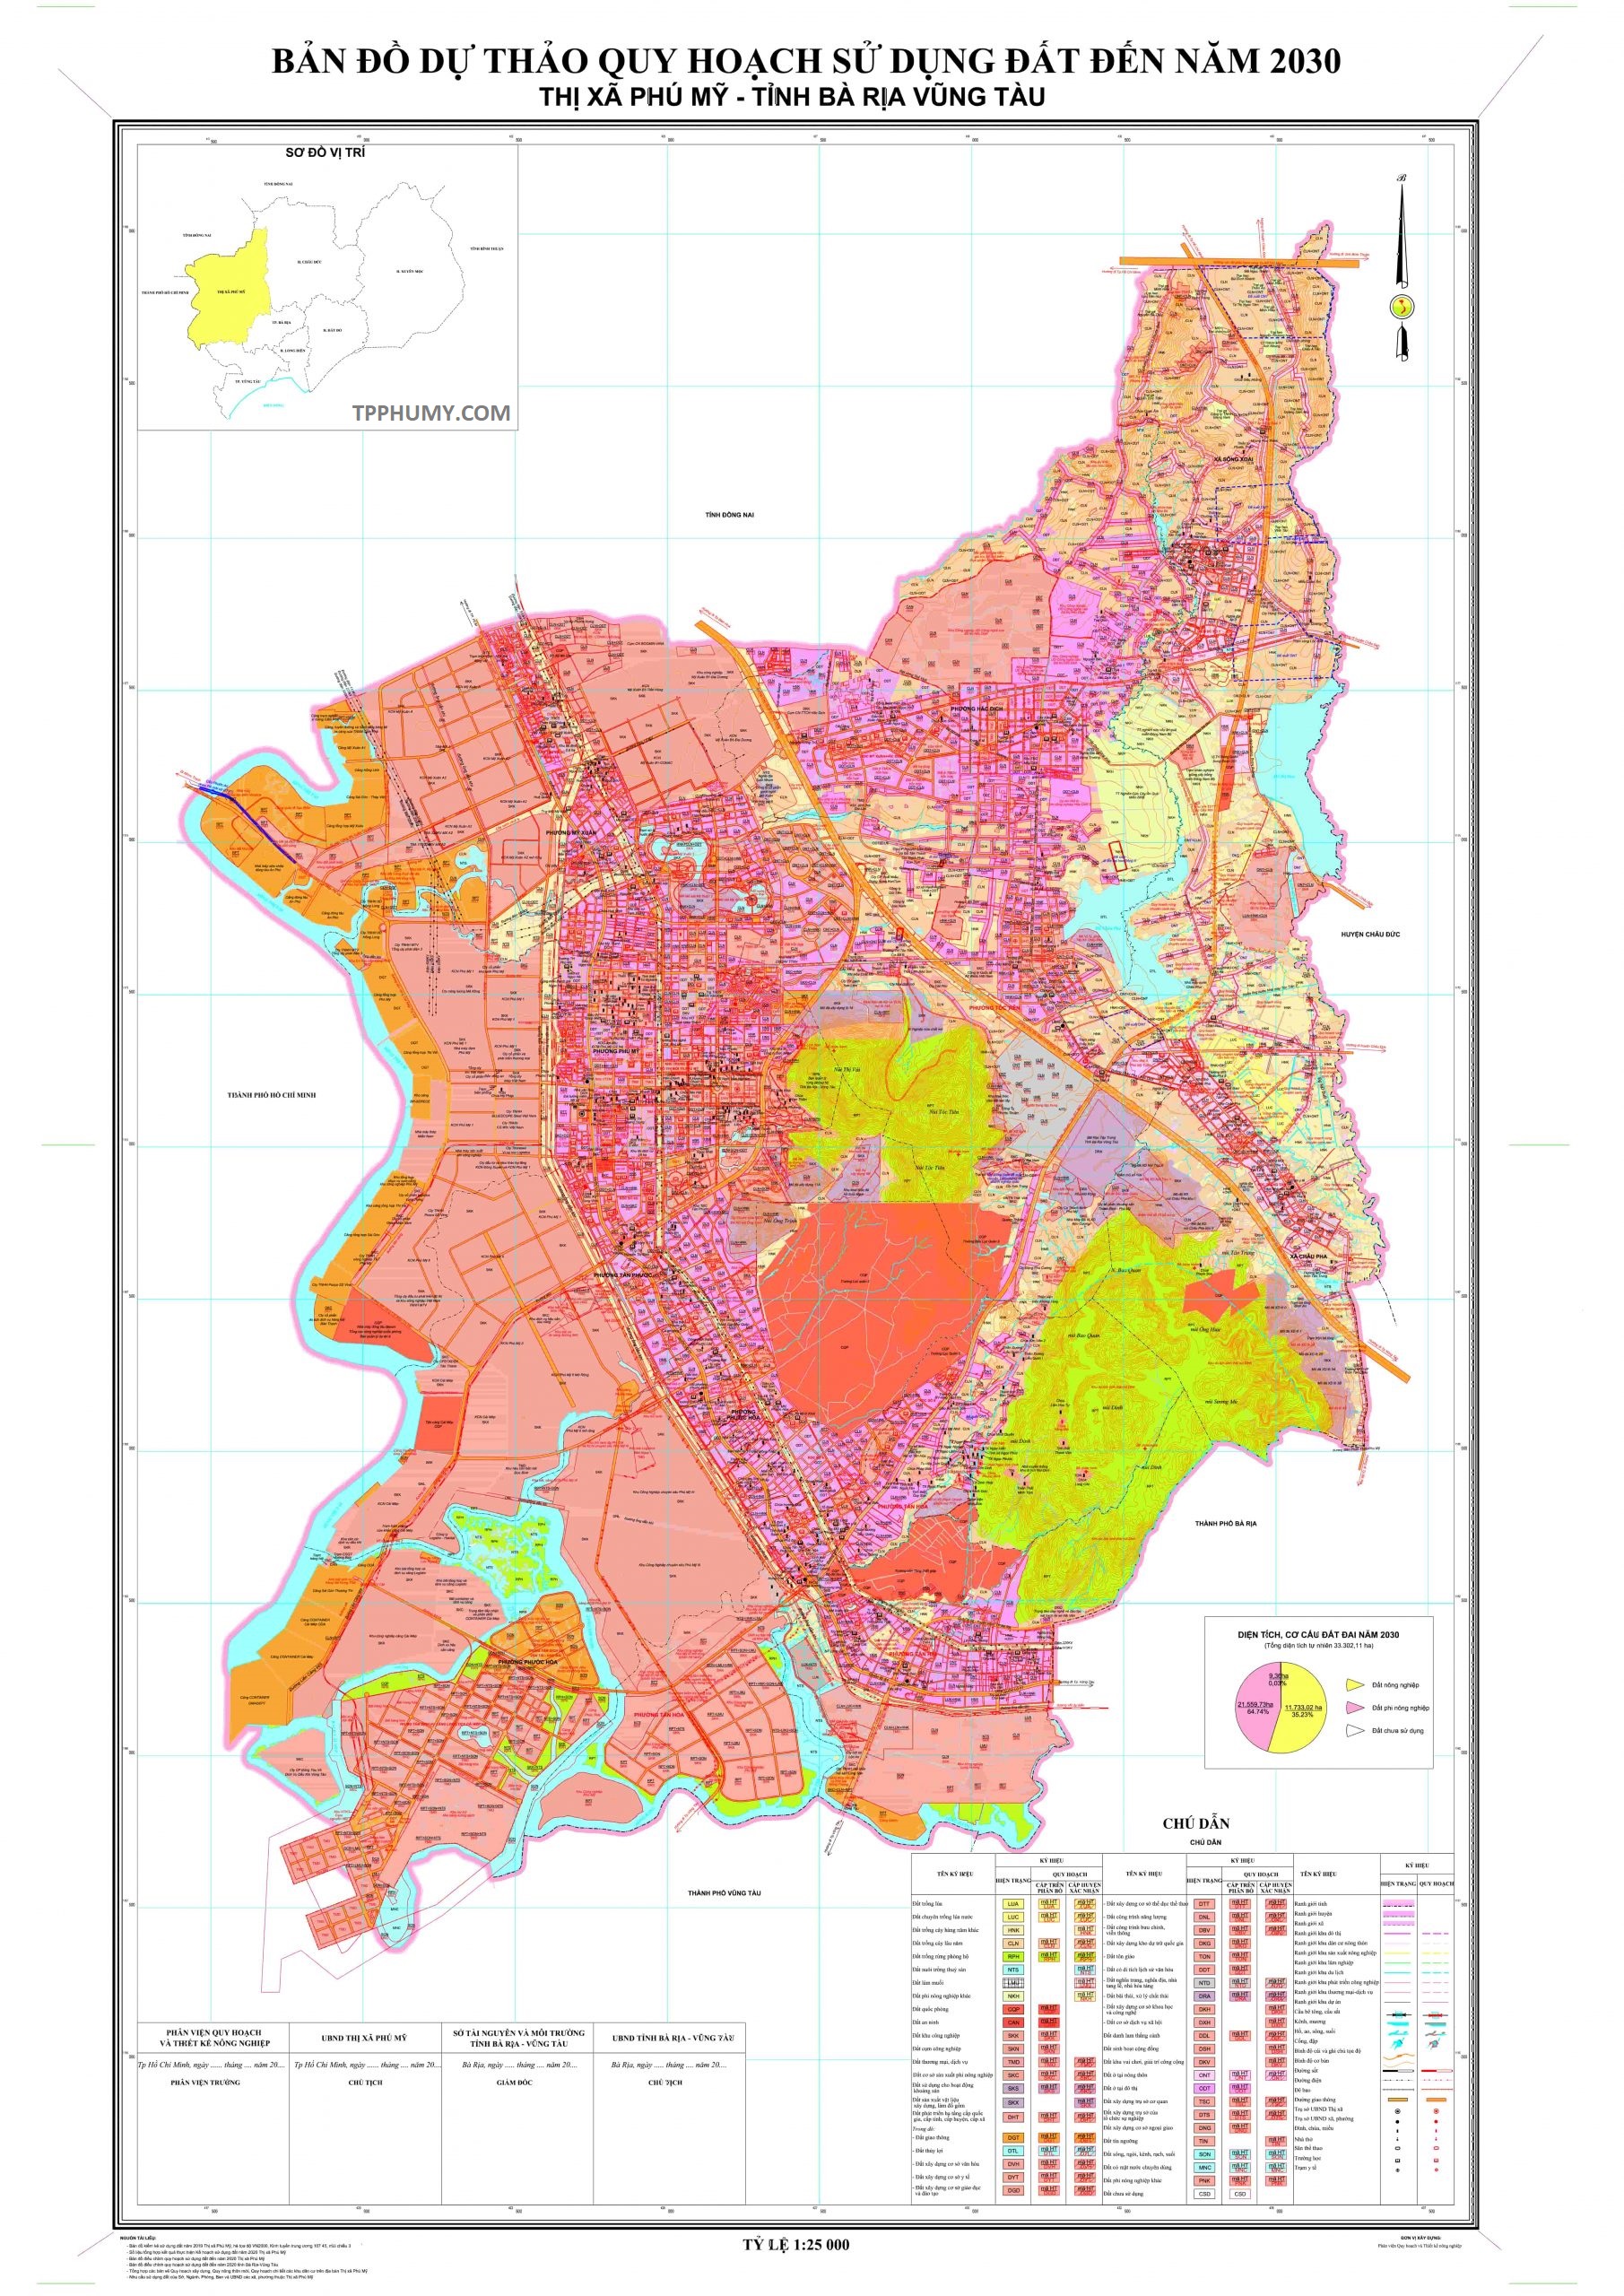 Bản đồ quy hoạch THỊ XÃ PHÚ MỸ, BR-VT đến năm 2030